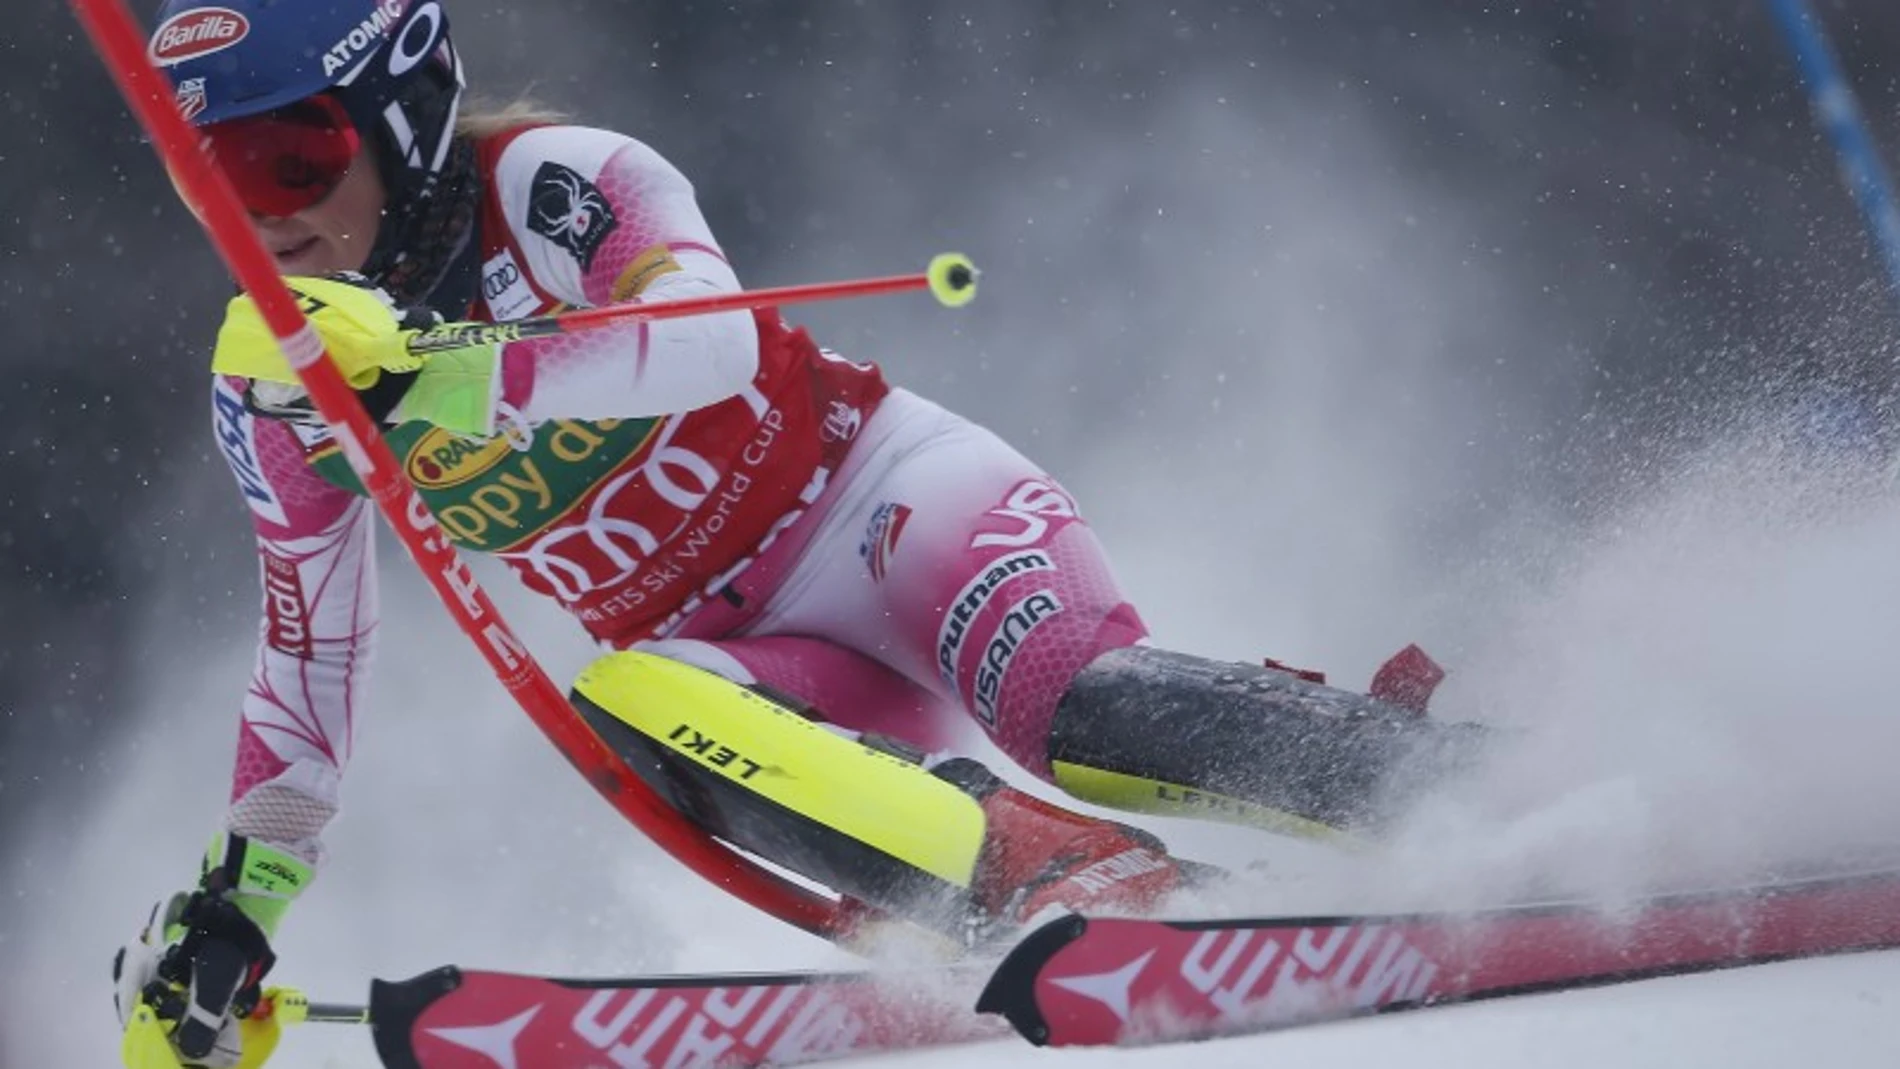 Espectacular imagen de Mikaela Shiffrin en el Slalom en Maribor